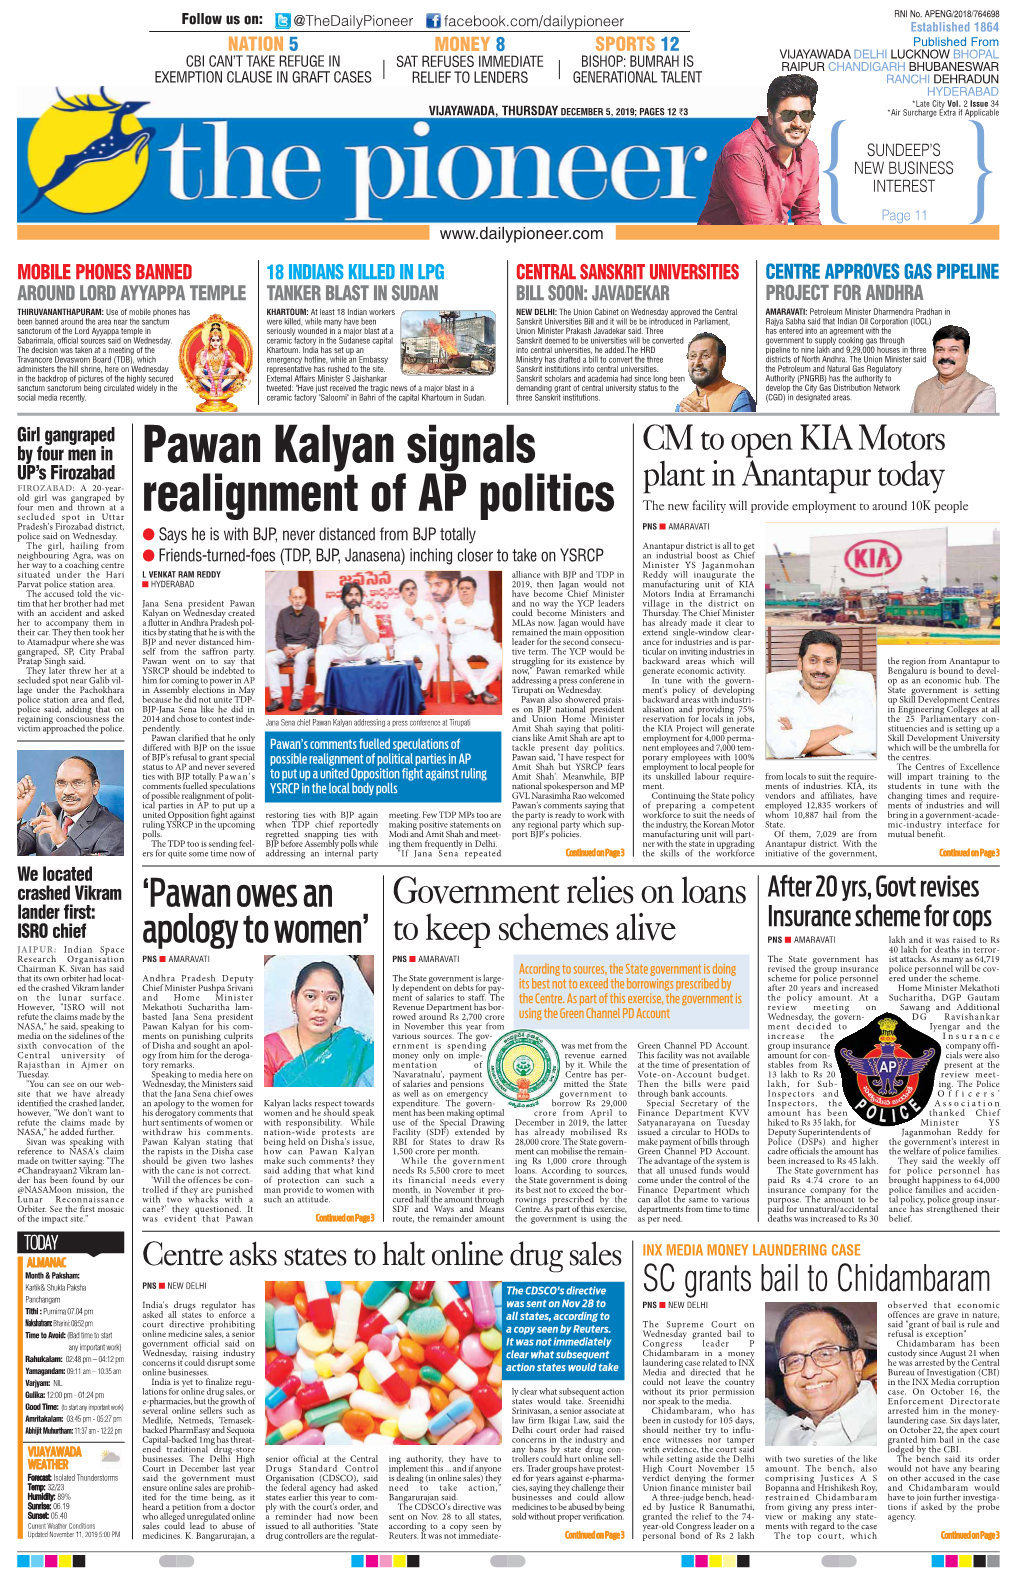 Pawan Kalyan Signals Realignment of AP Politics